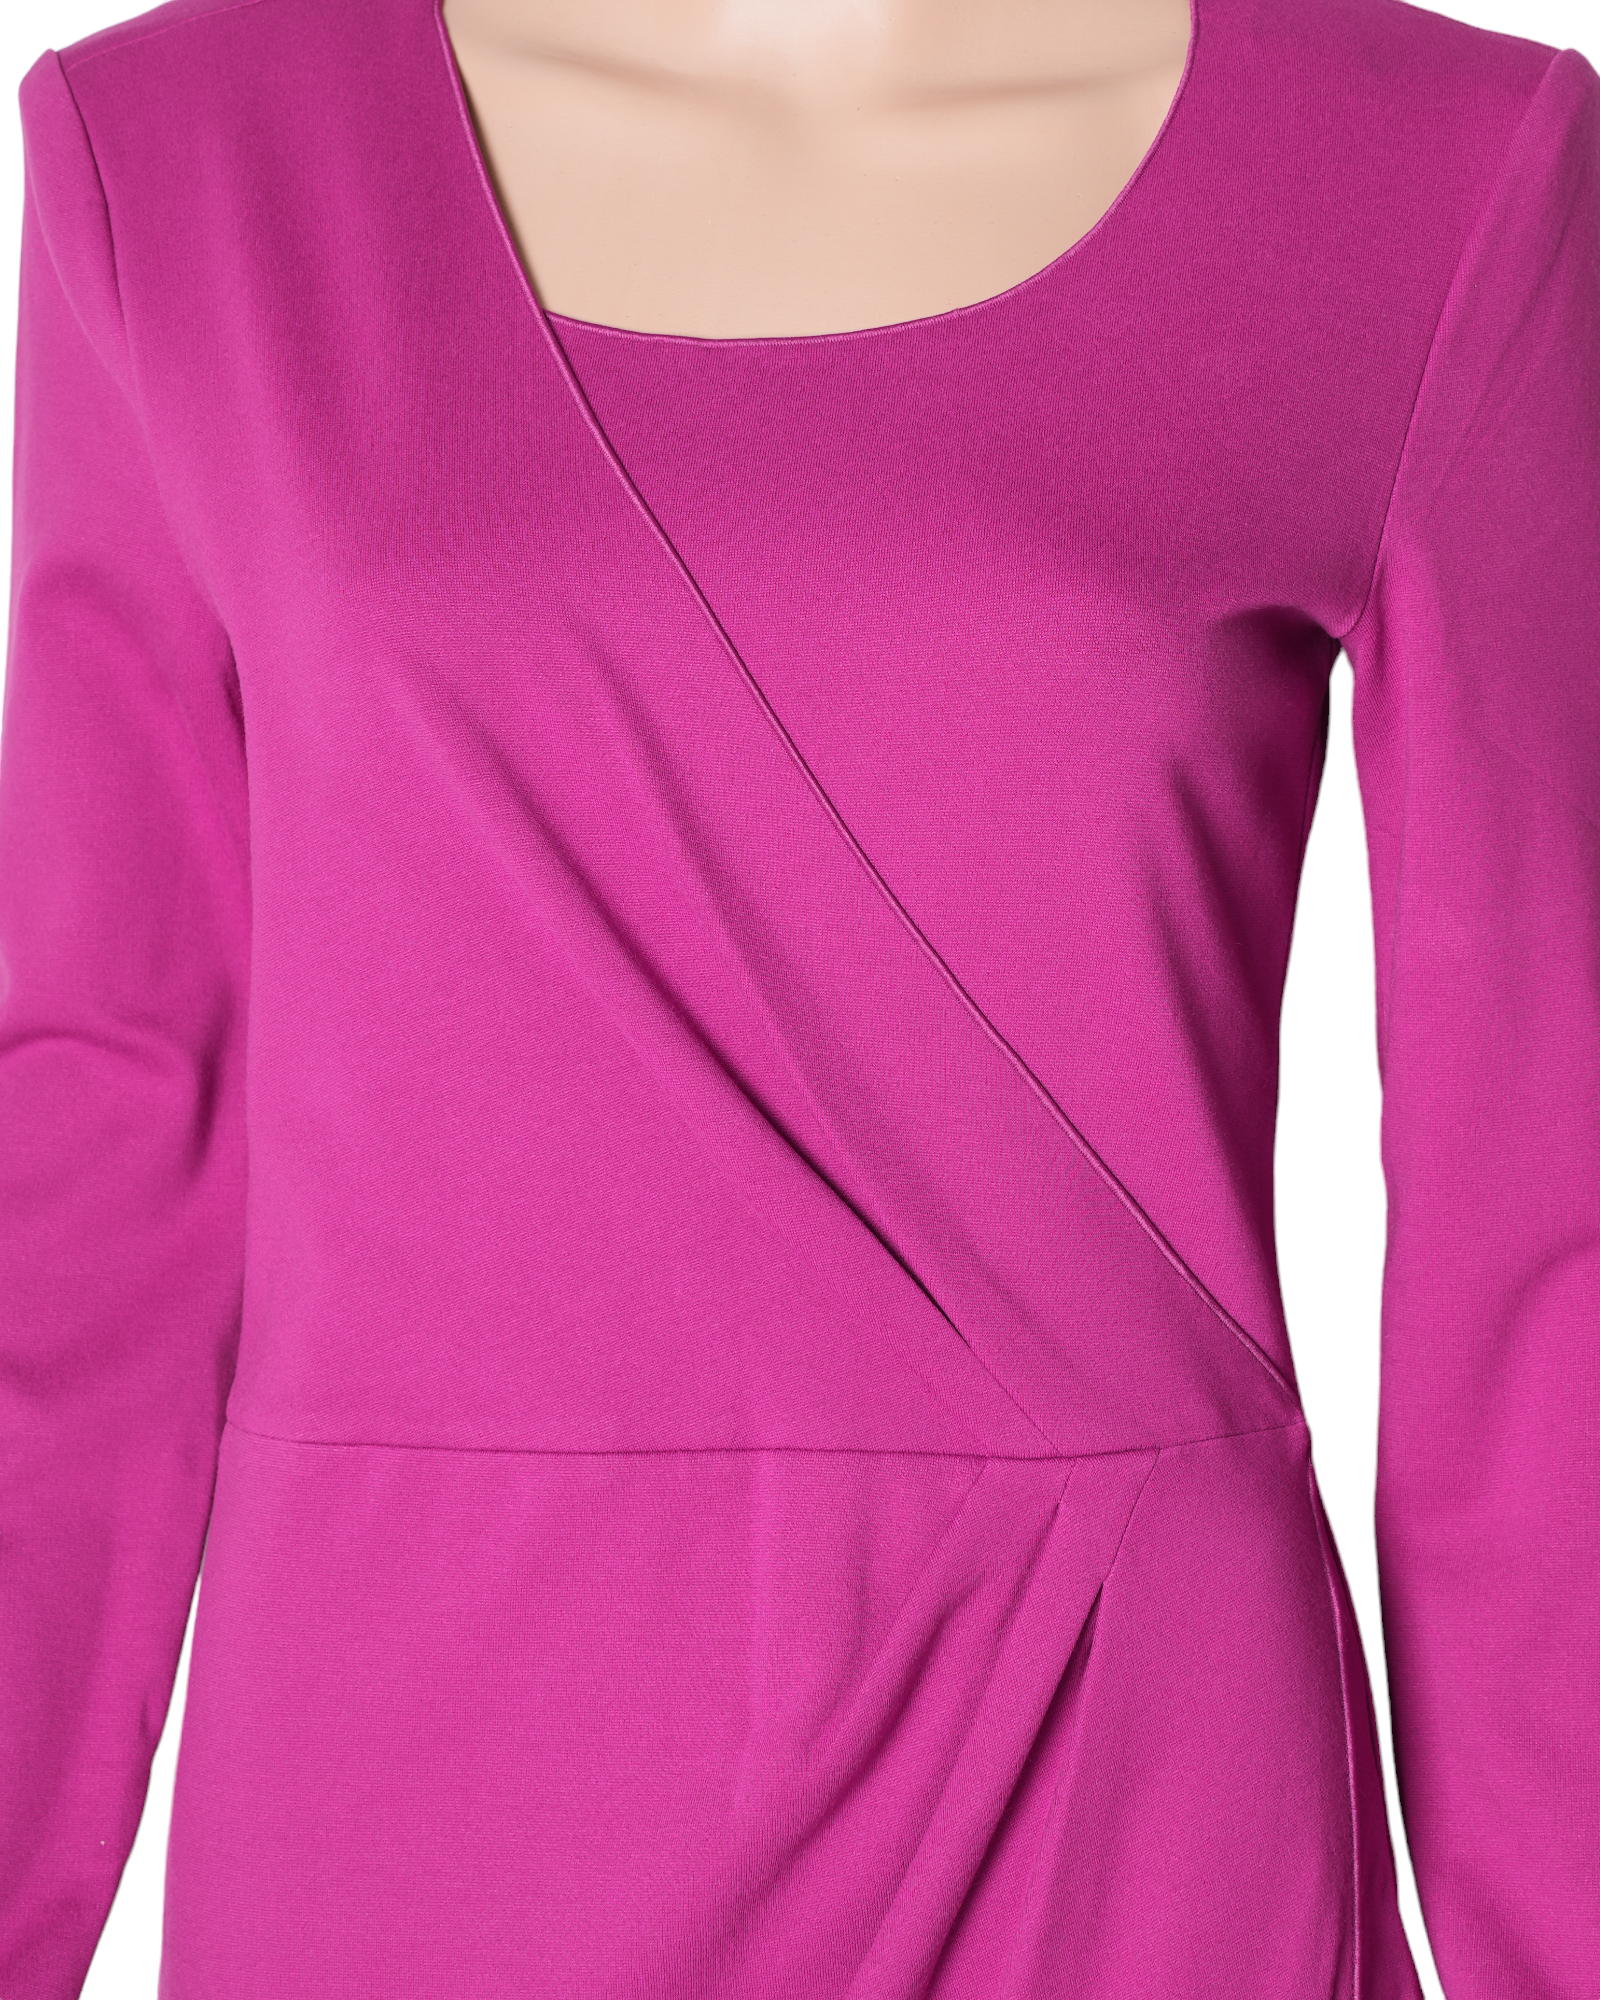 Armani Collezioni Pink Midlength Dress